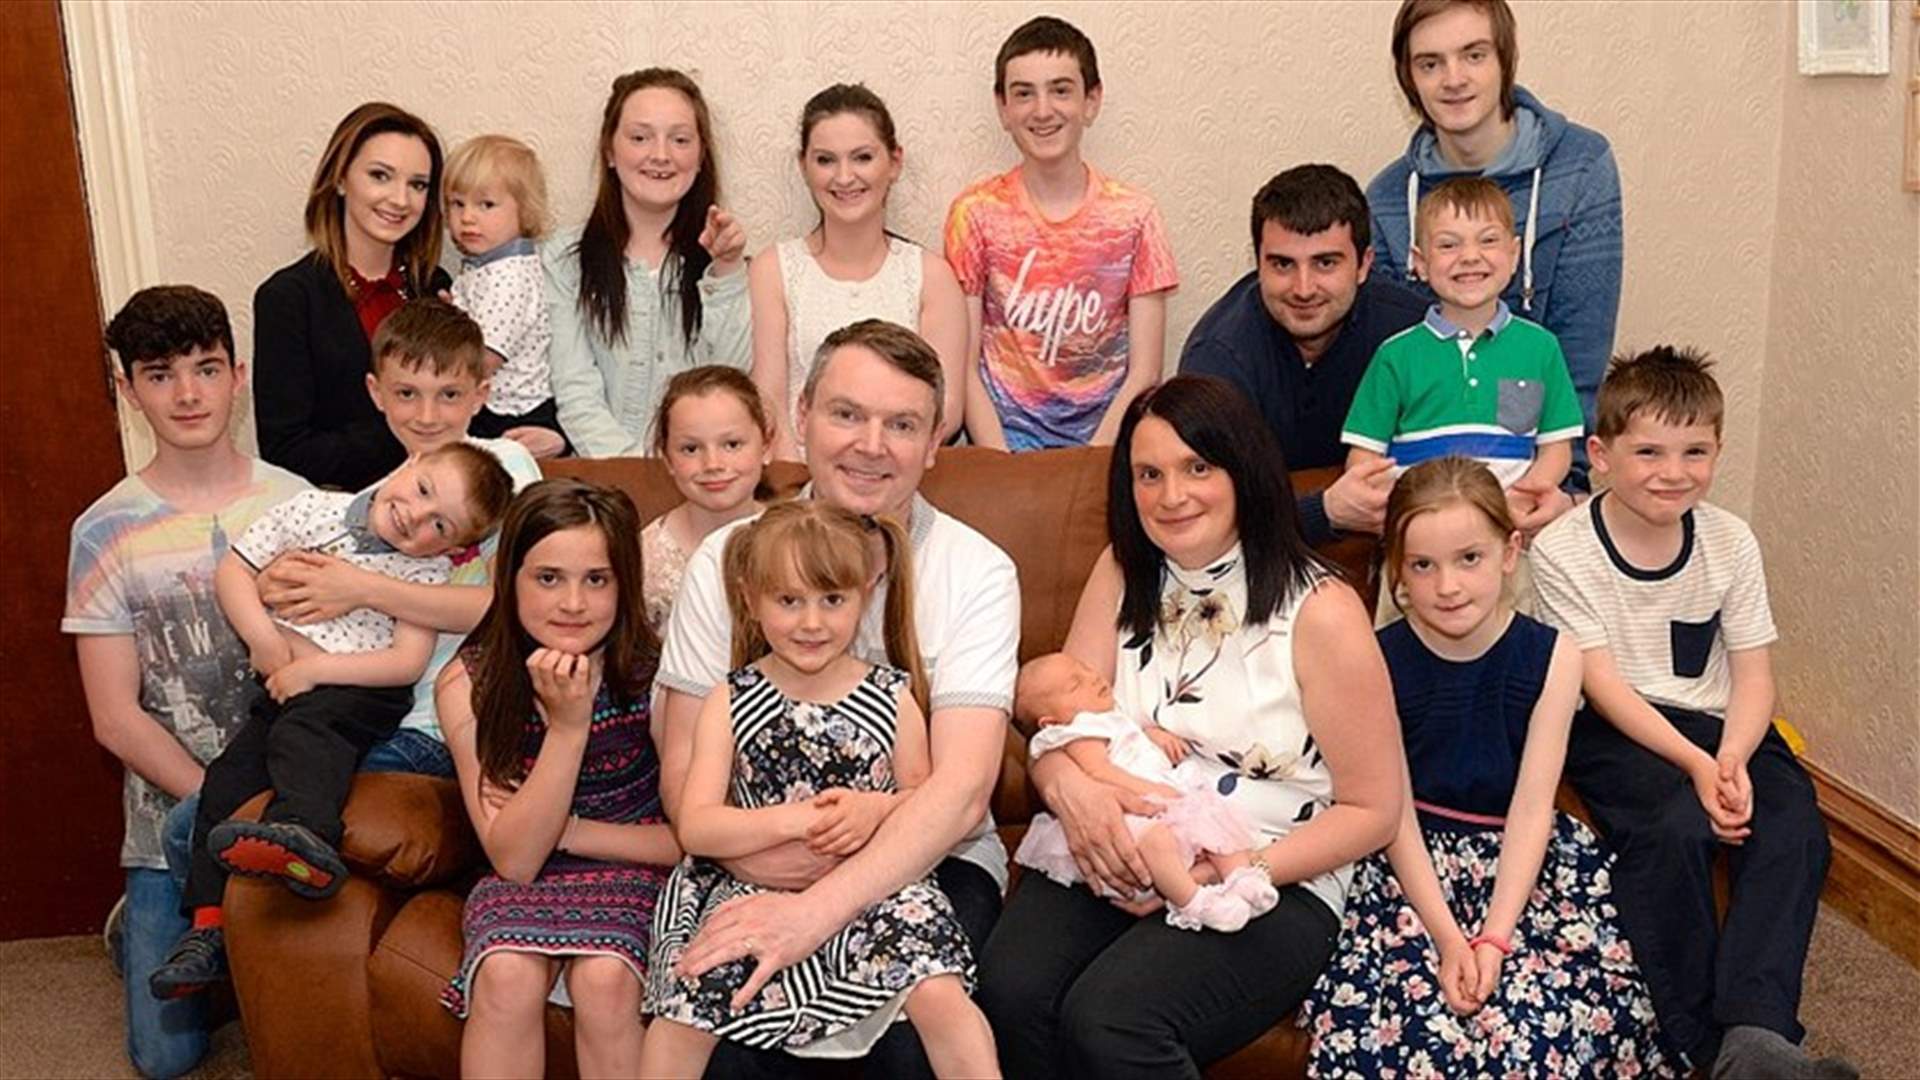 بالصور: أكبر عائلة في بريطانيا... استقبلت الطفل رقم 19 وتسعى للرقم 20!